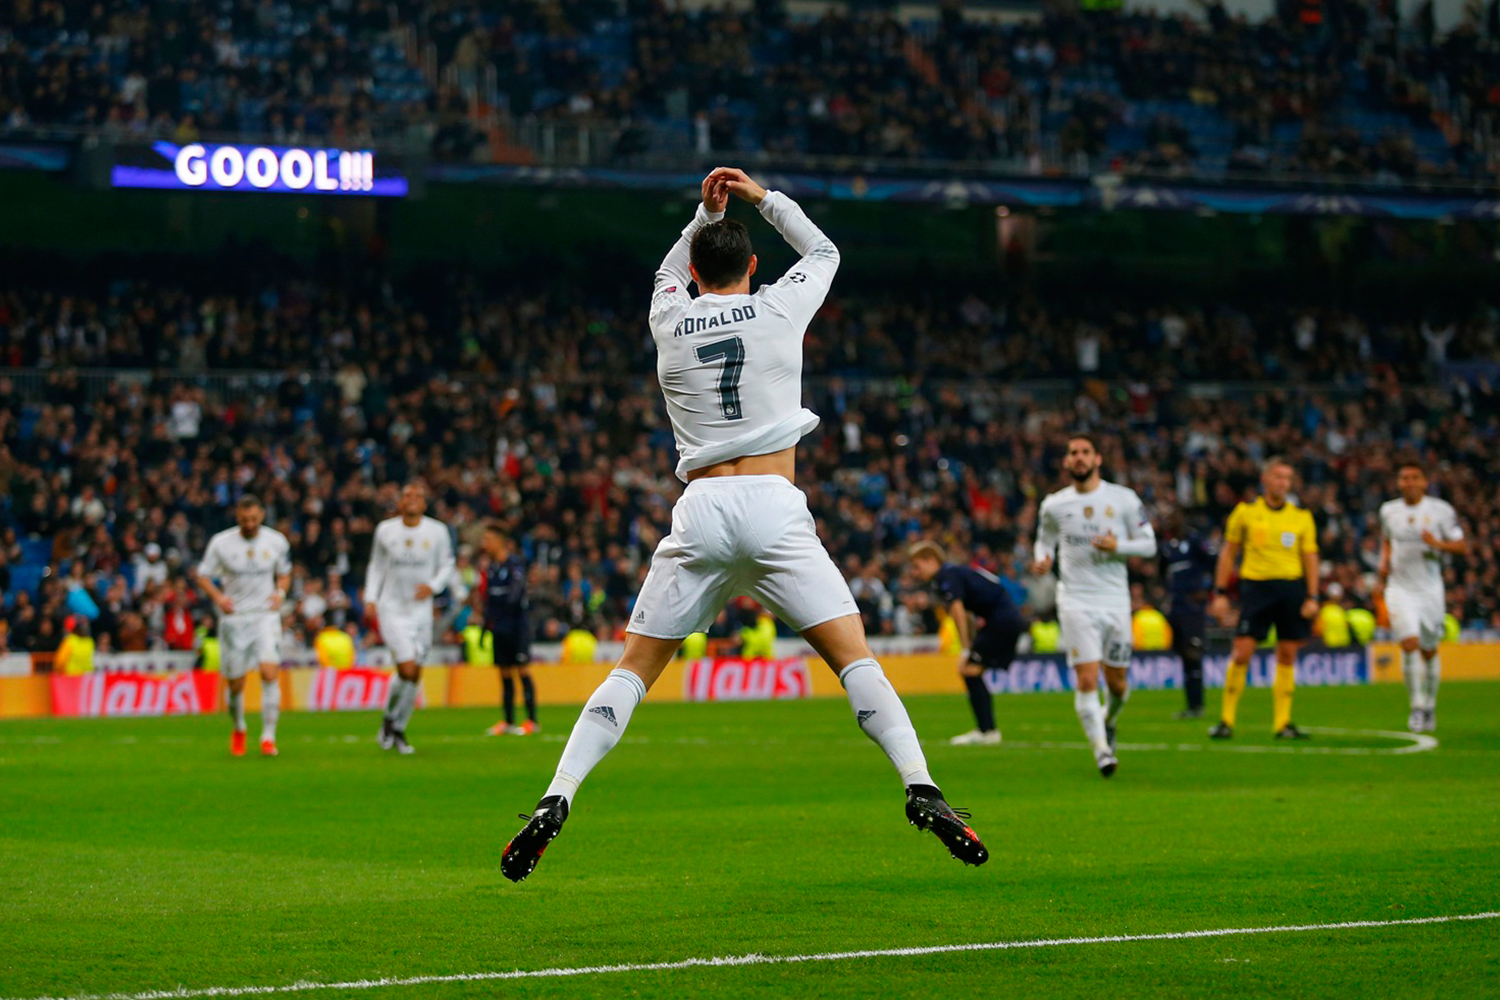 El Real Madrid golea al Malmö por 8-0 en un histórico encuentro que hace olvidar los problemas de la última semana.